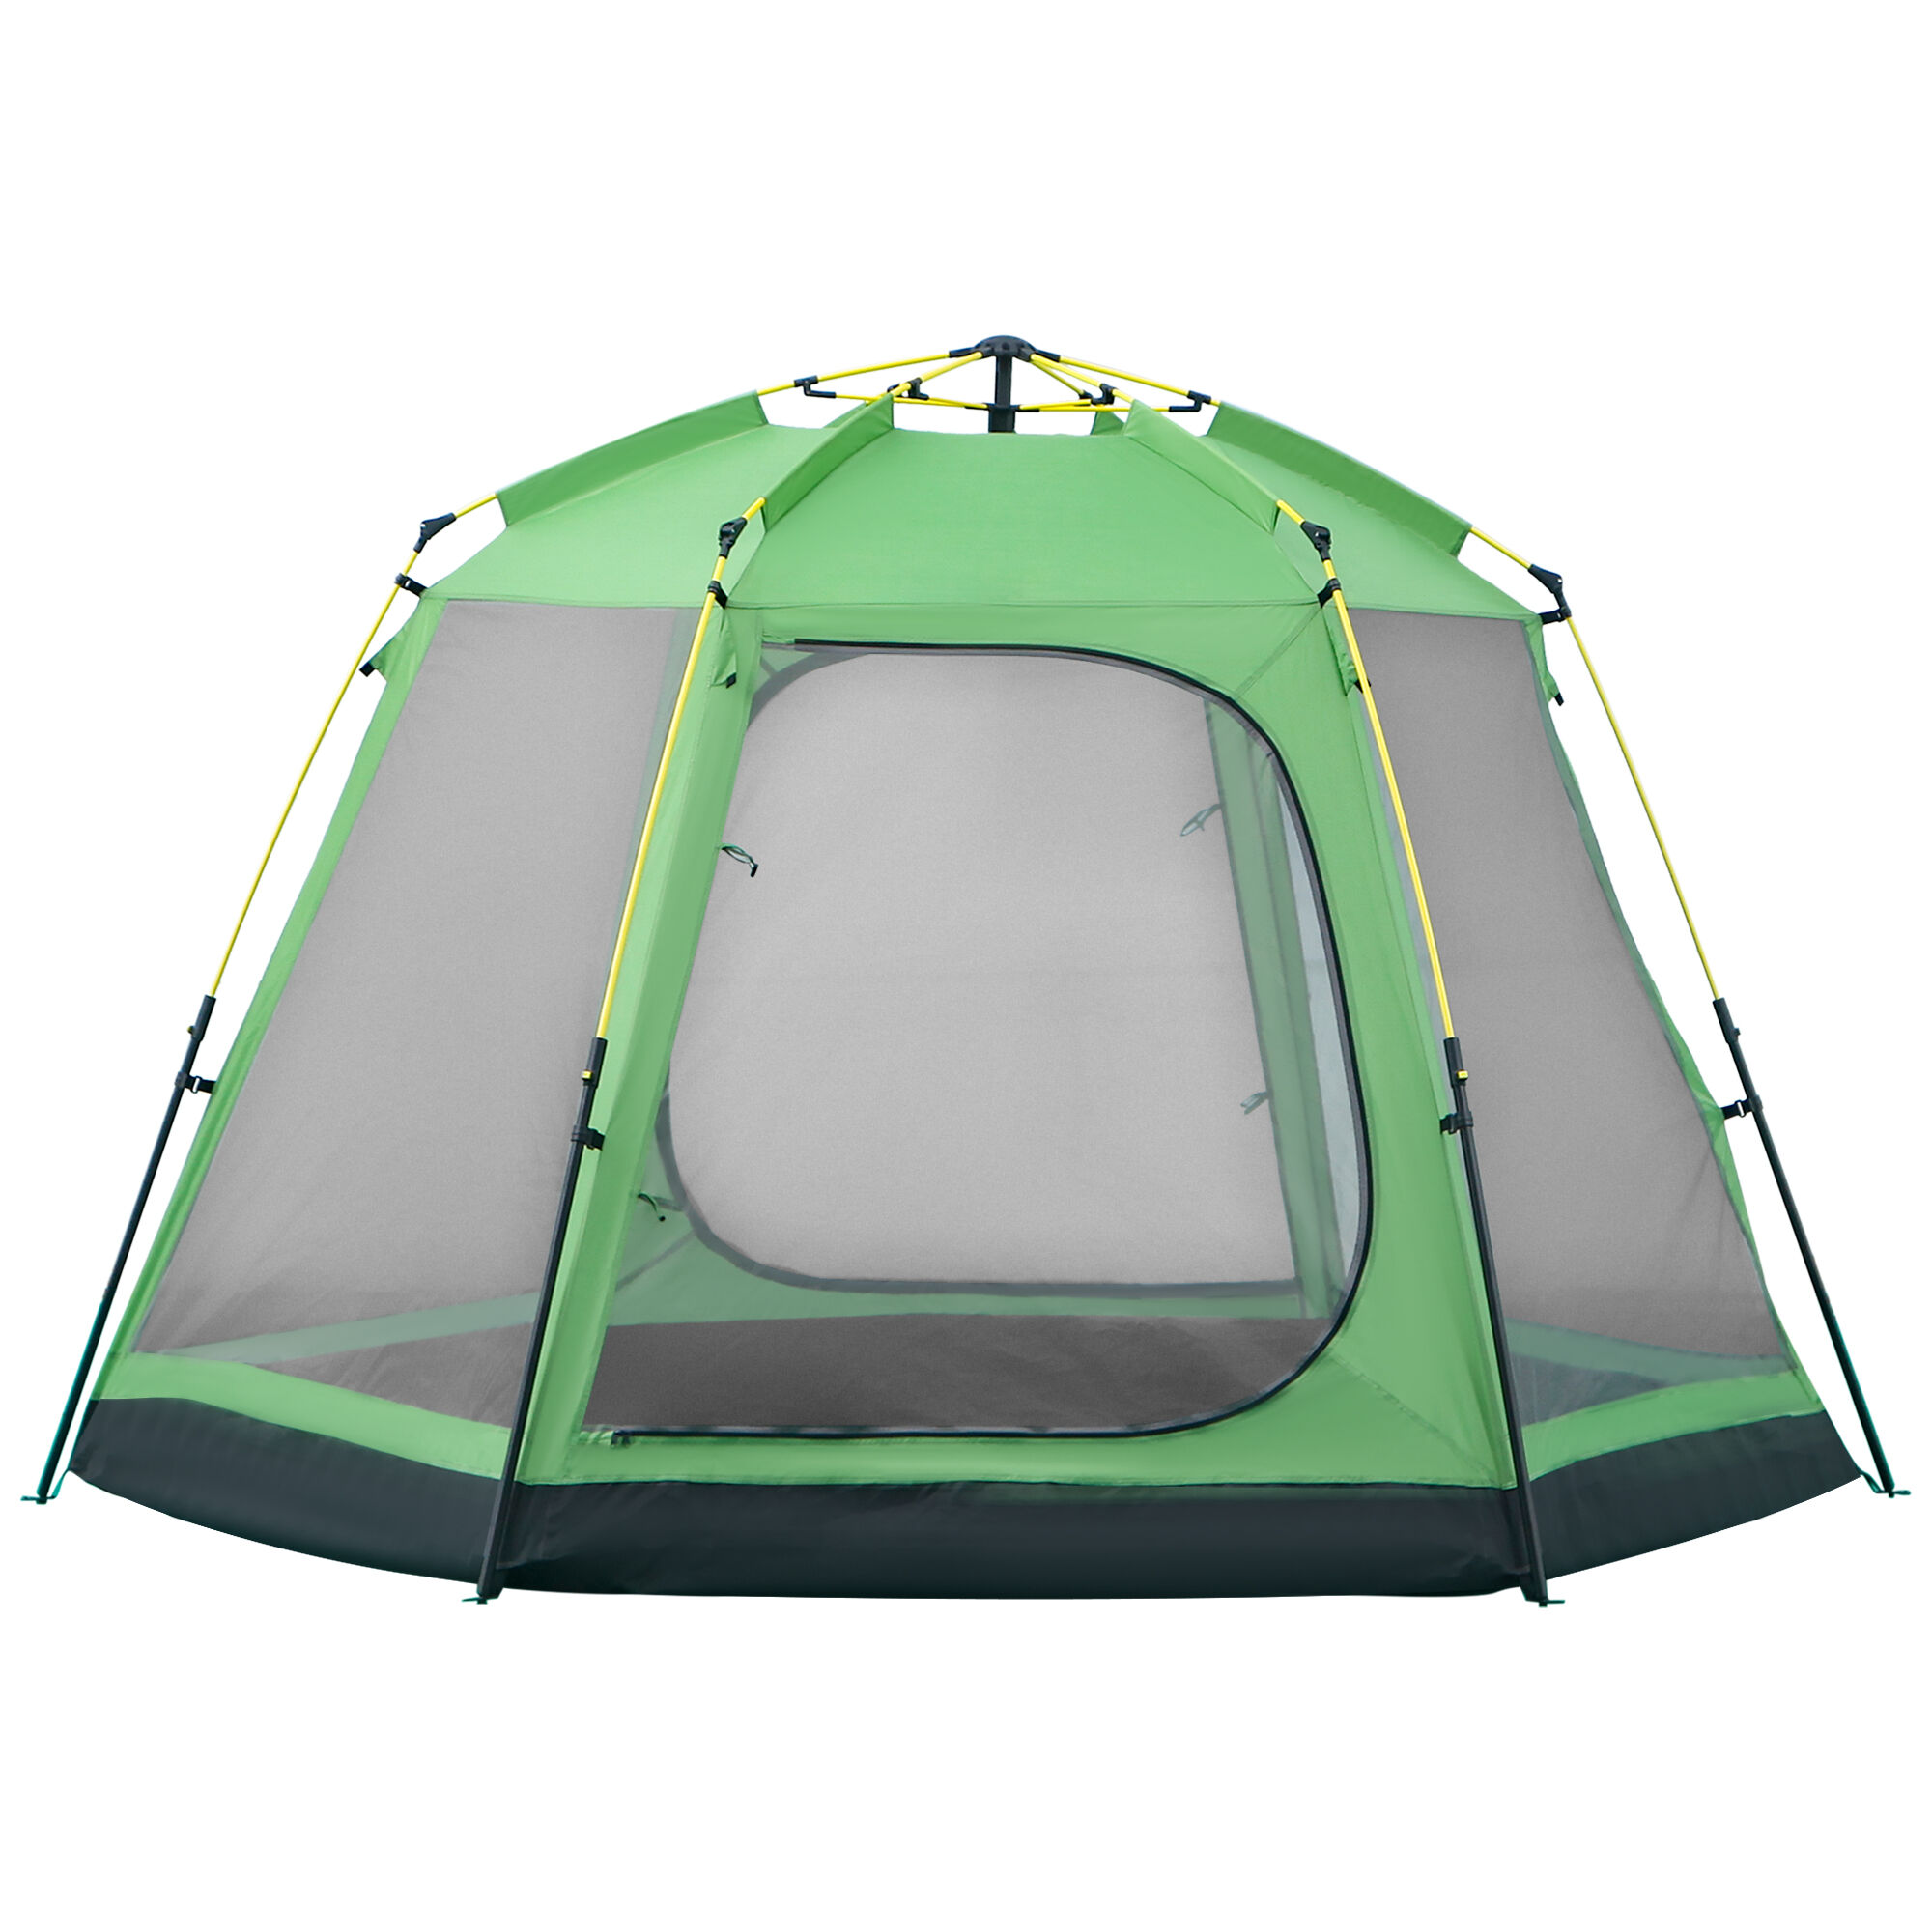 Outsunny Tente de camping familiale 6 personnes montage instantanée Pop-up 4 fenêtres 2 portes dim. 320L x 320l x 176H cm  vert gris